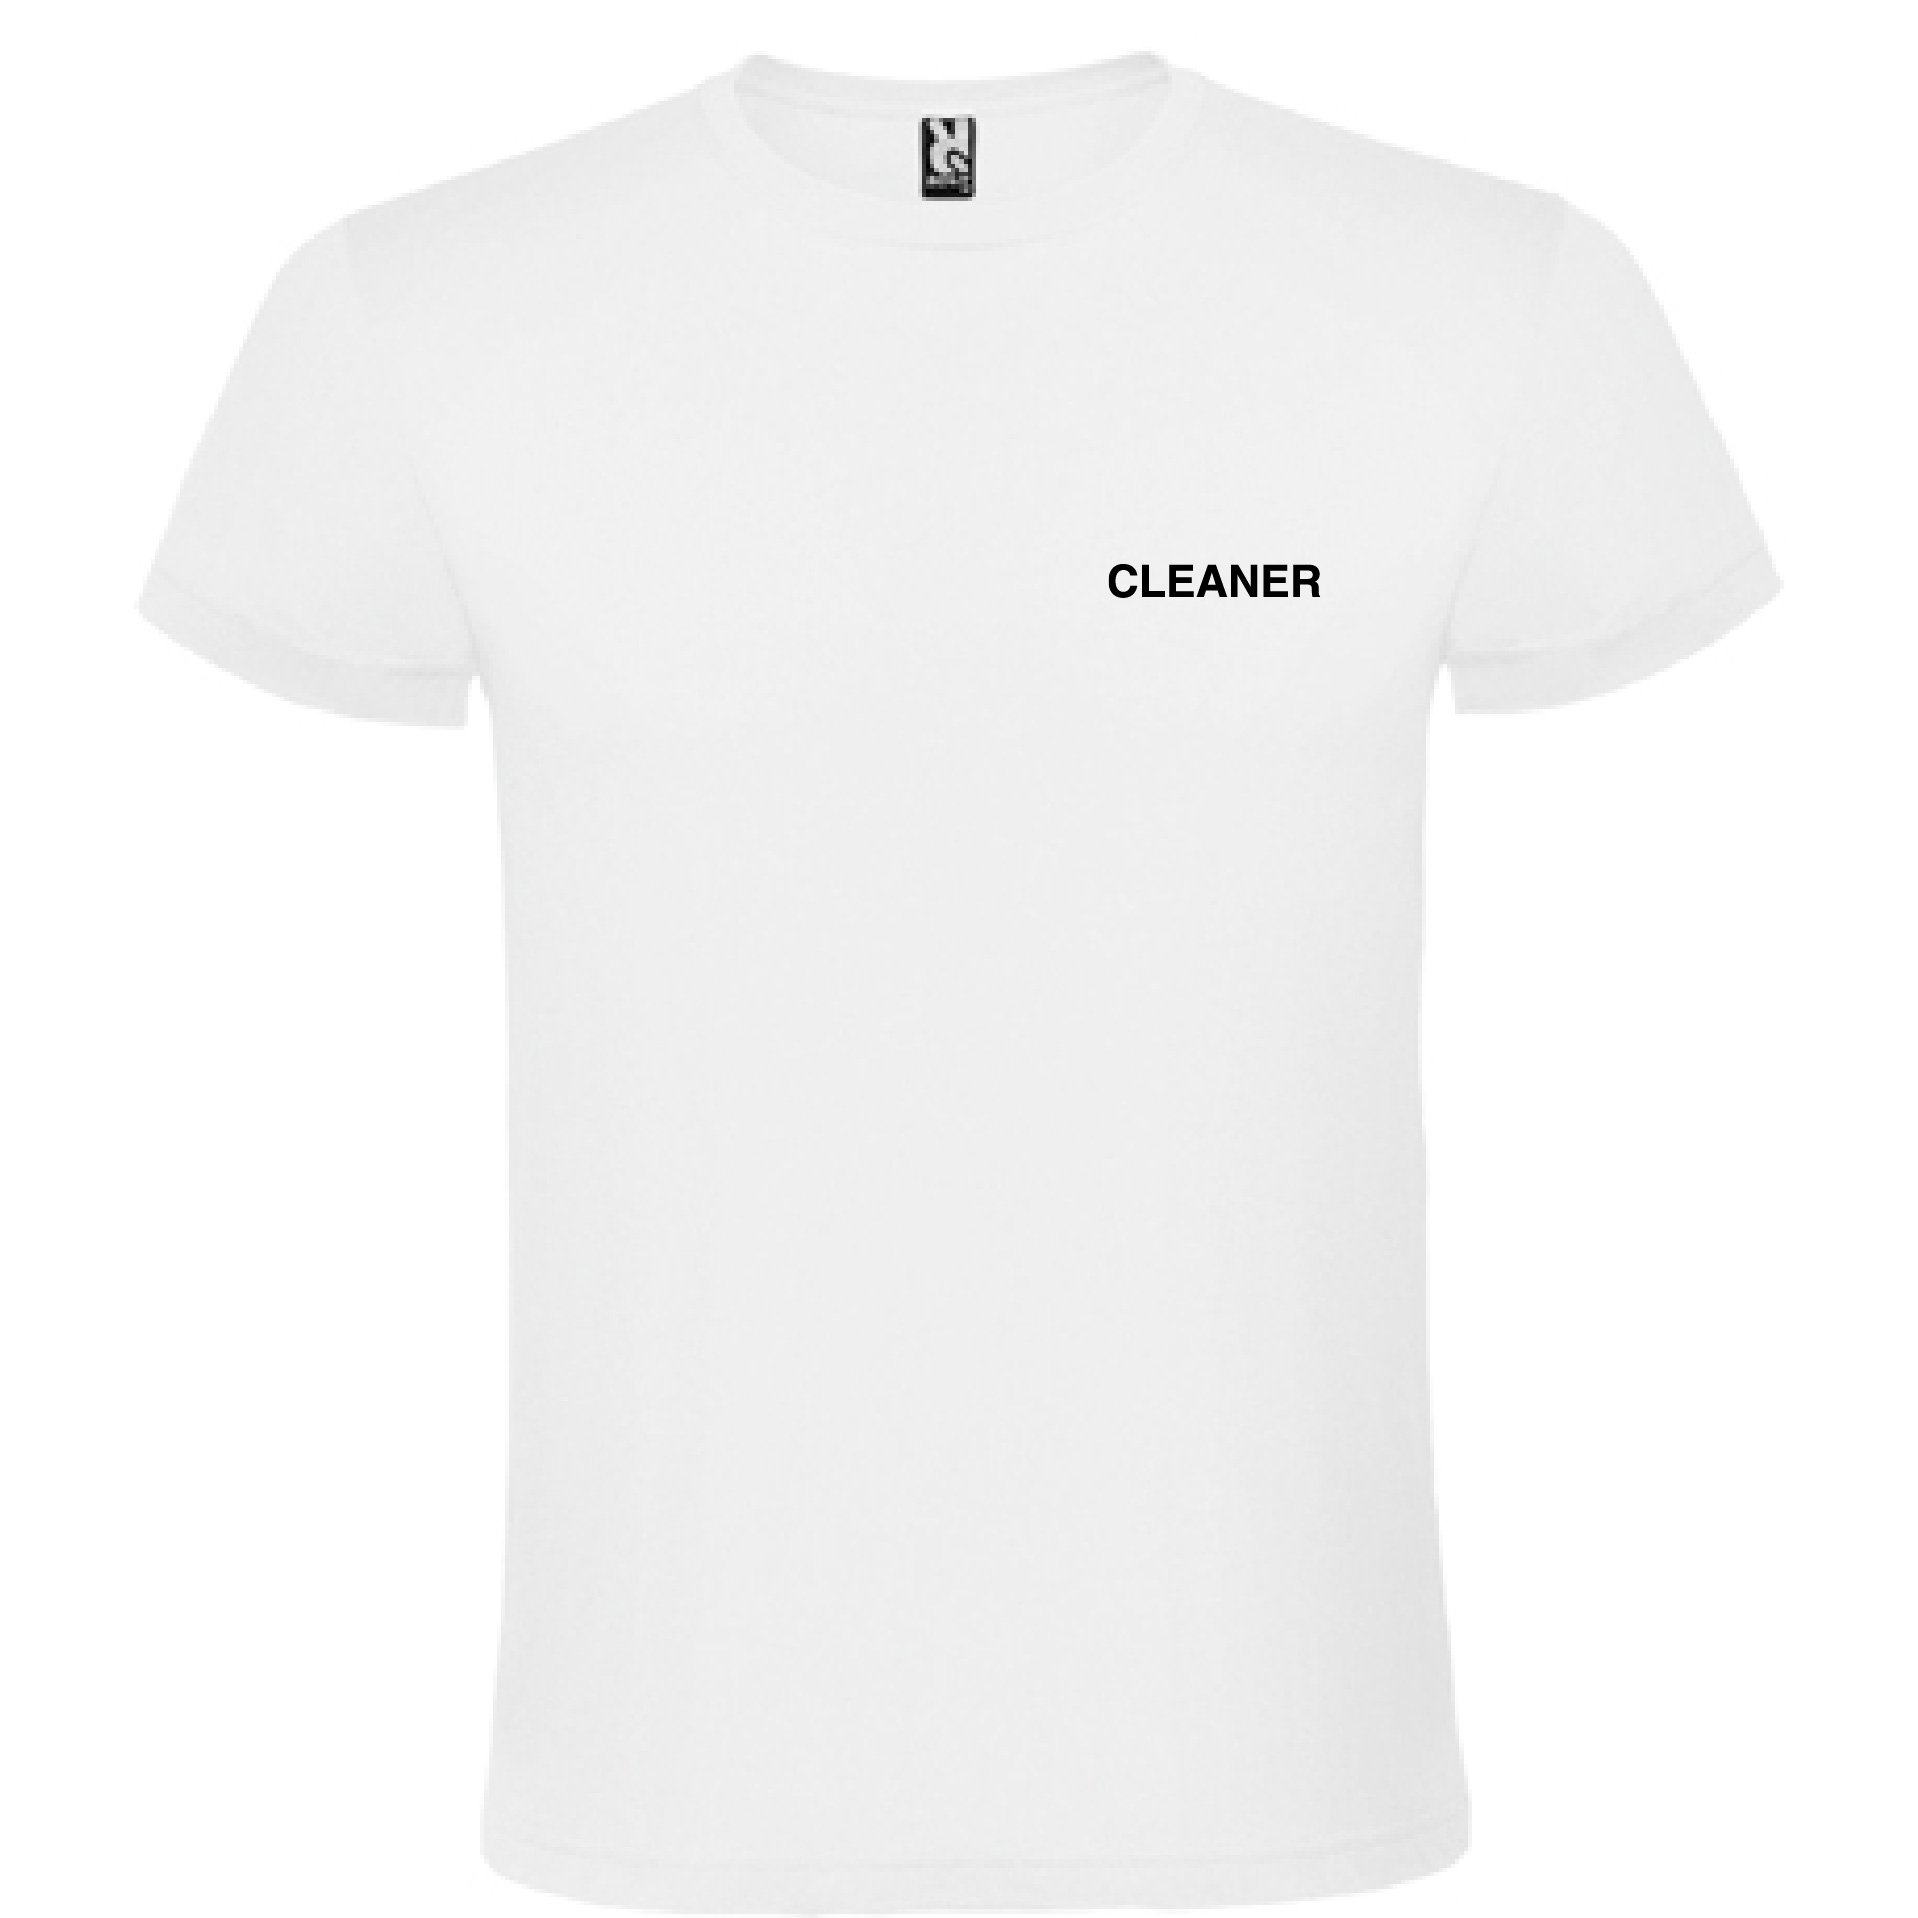 638017878491211165_t-shirt_cleaner_back_white.jpg